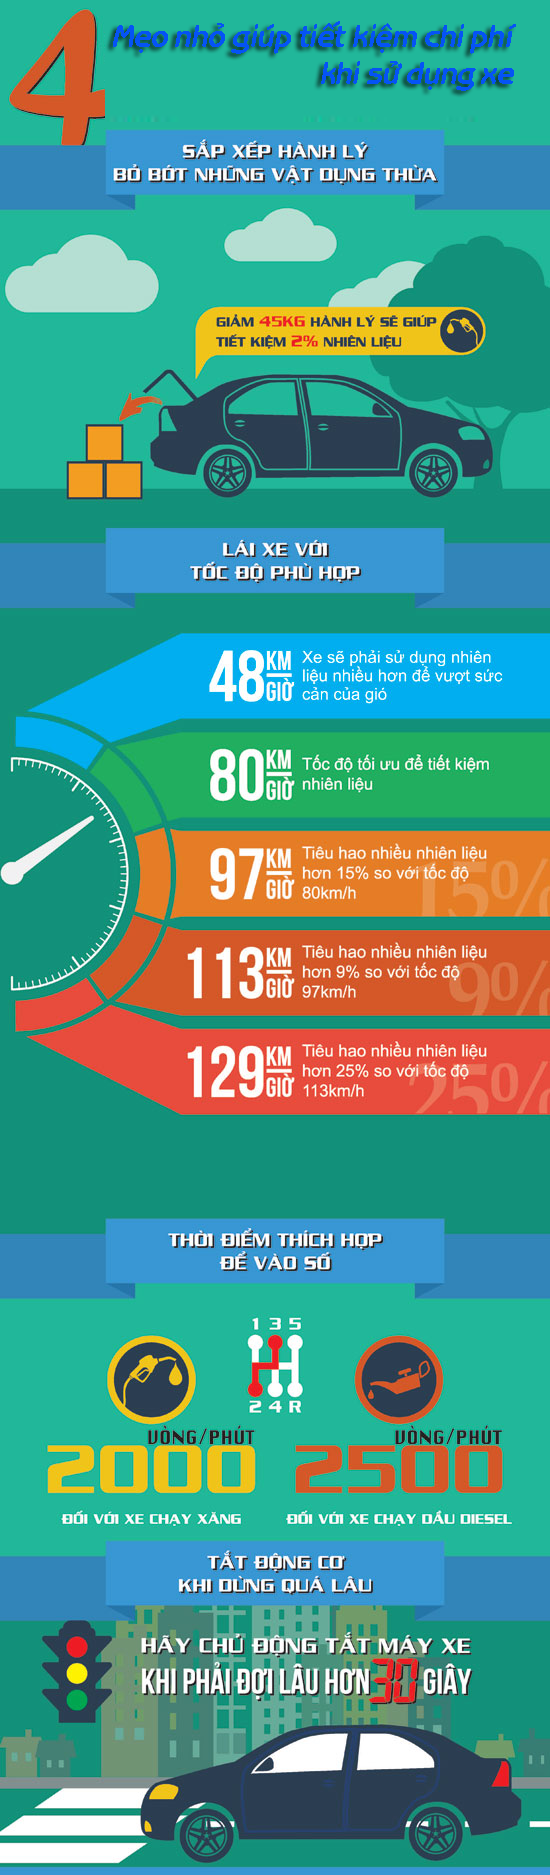 4 Mẹo giúp tiết kiệm chi phí sử dụng xe ô tô [Infographic]